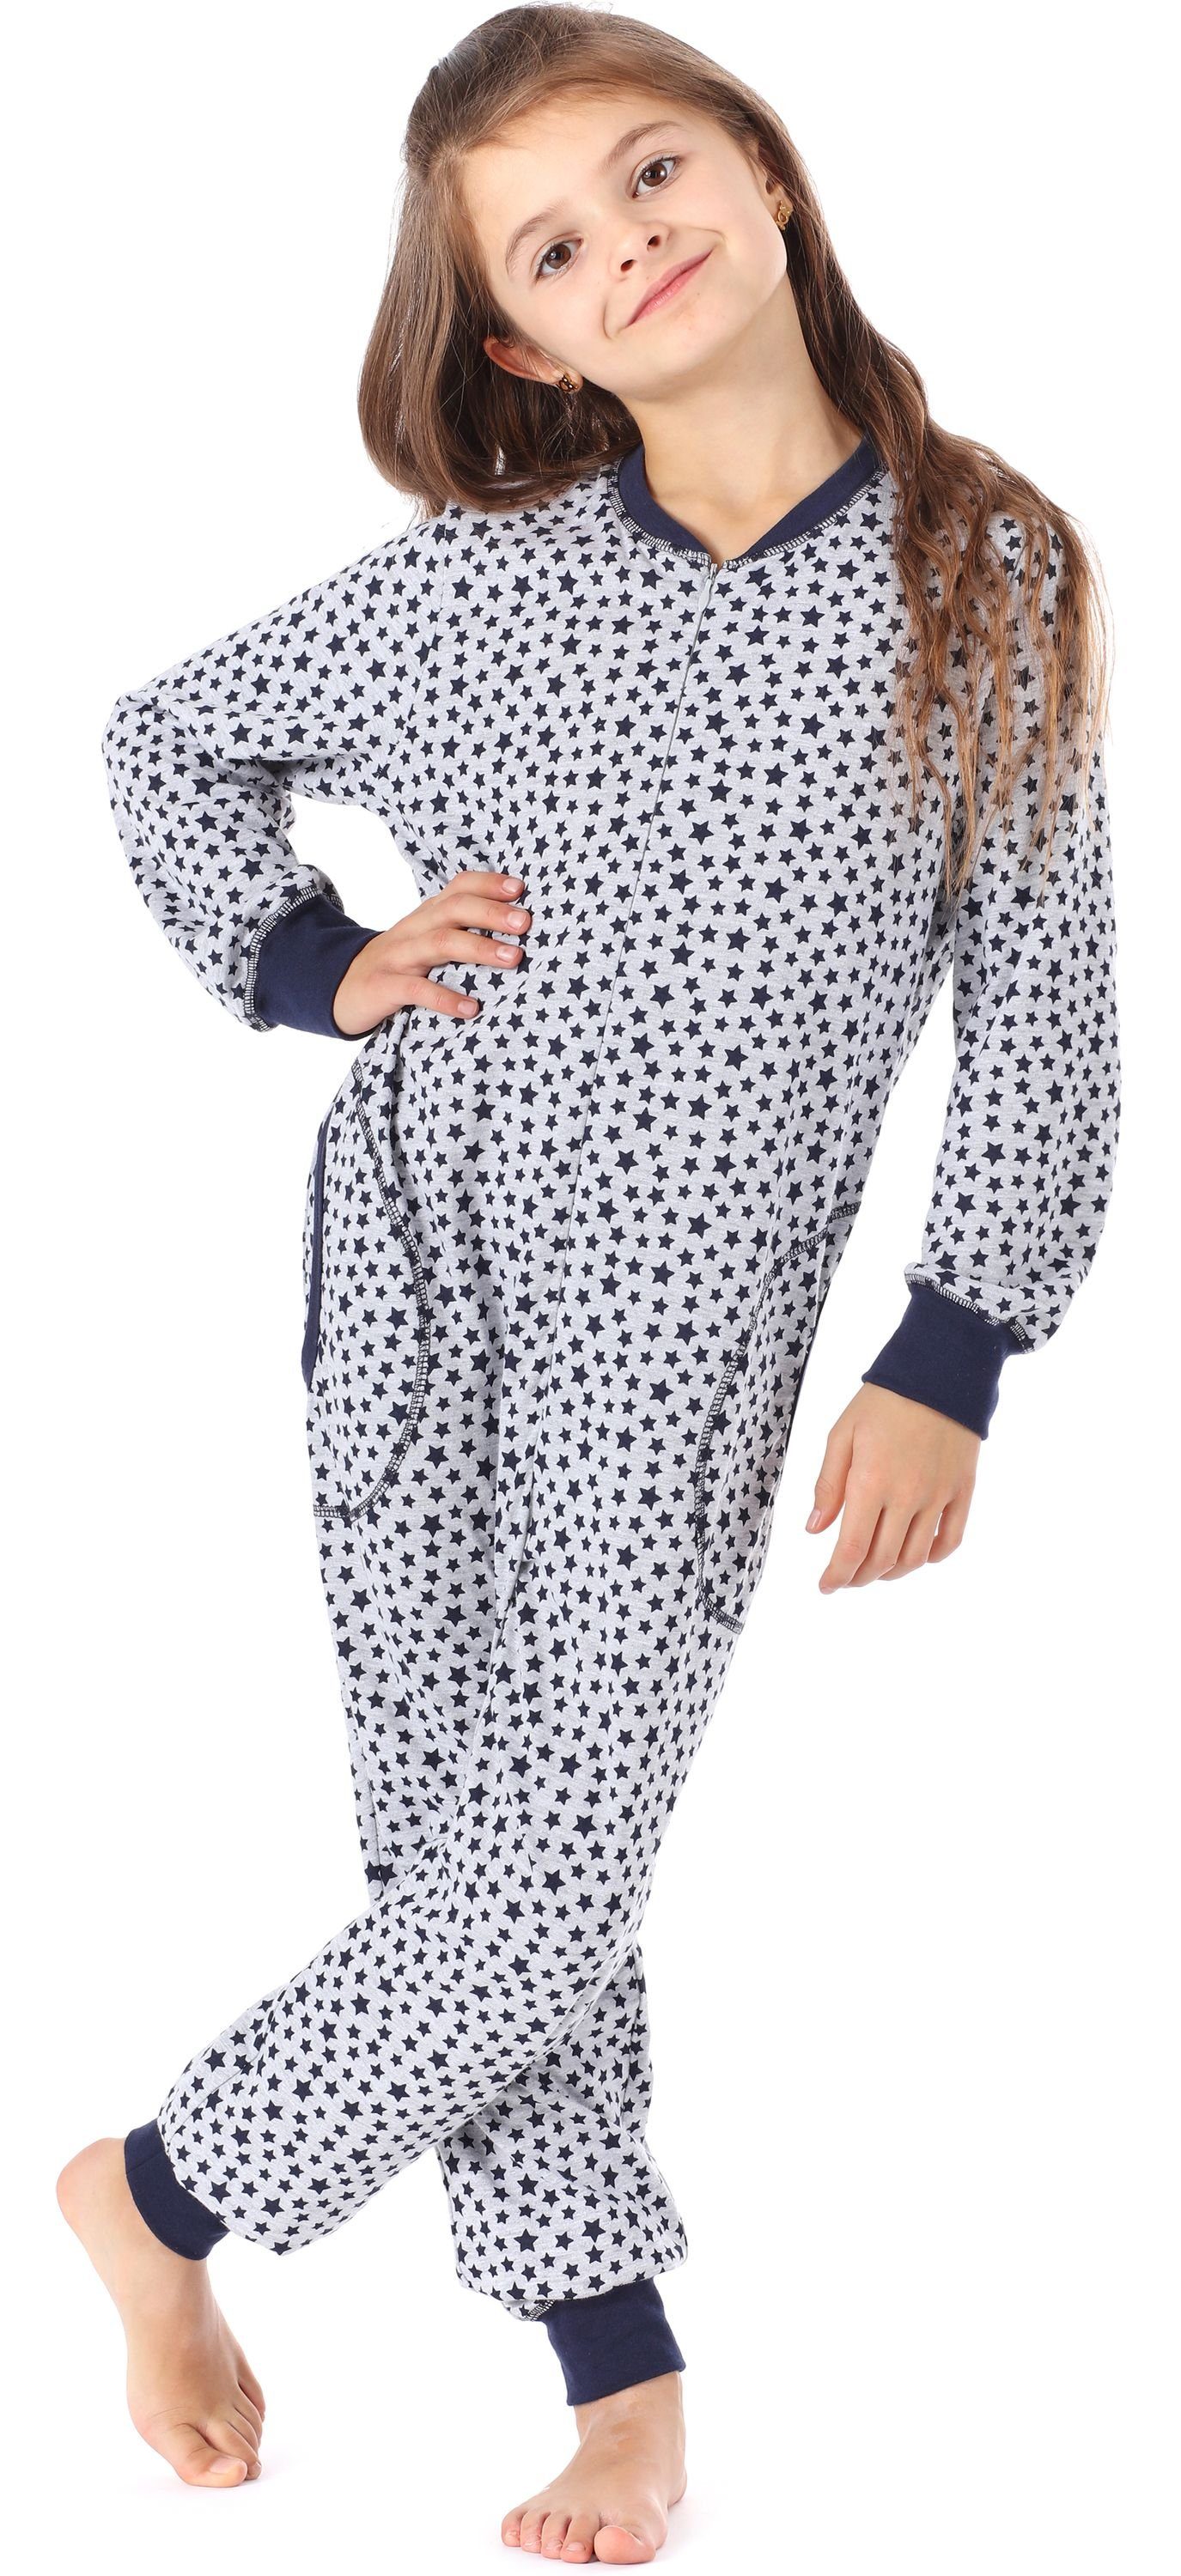 Style MS10-186 Sterne Melange Marine Schlafanzug Jumpsuit Mädchen Schlafanzug Merry